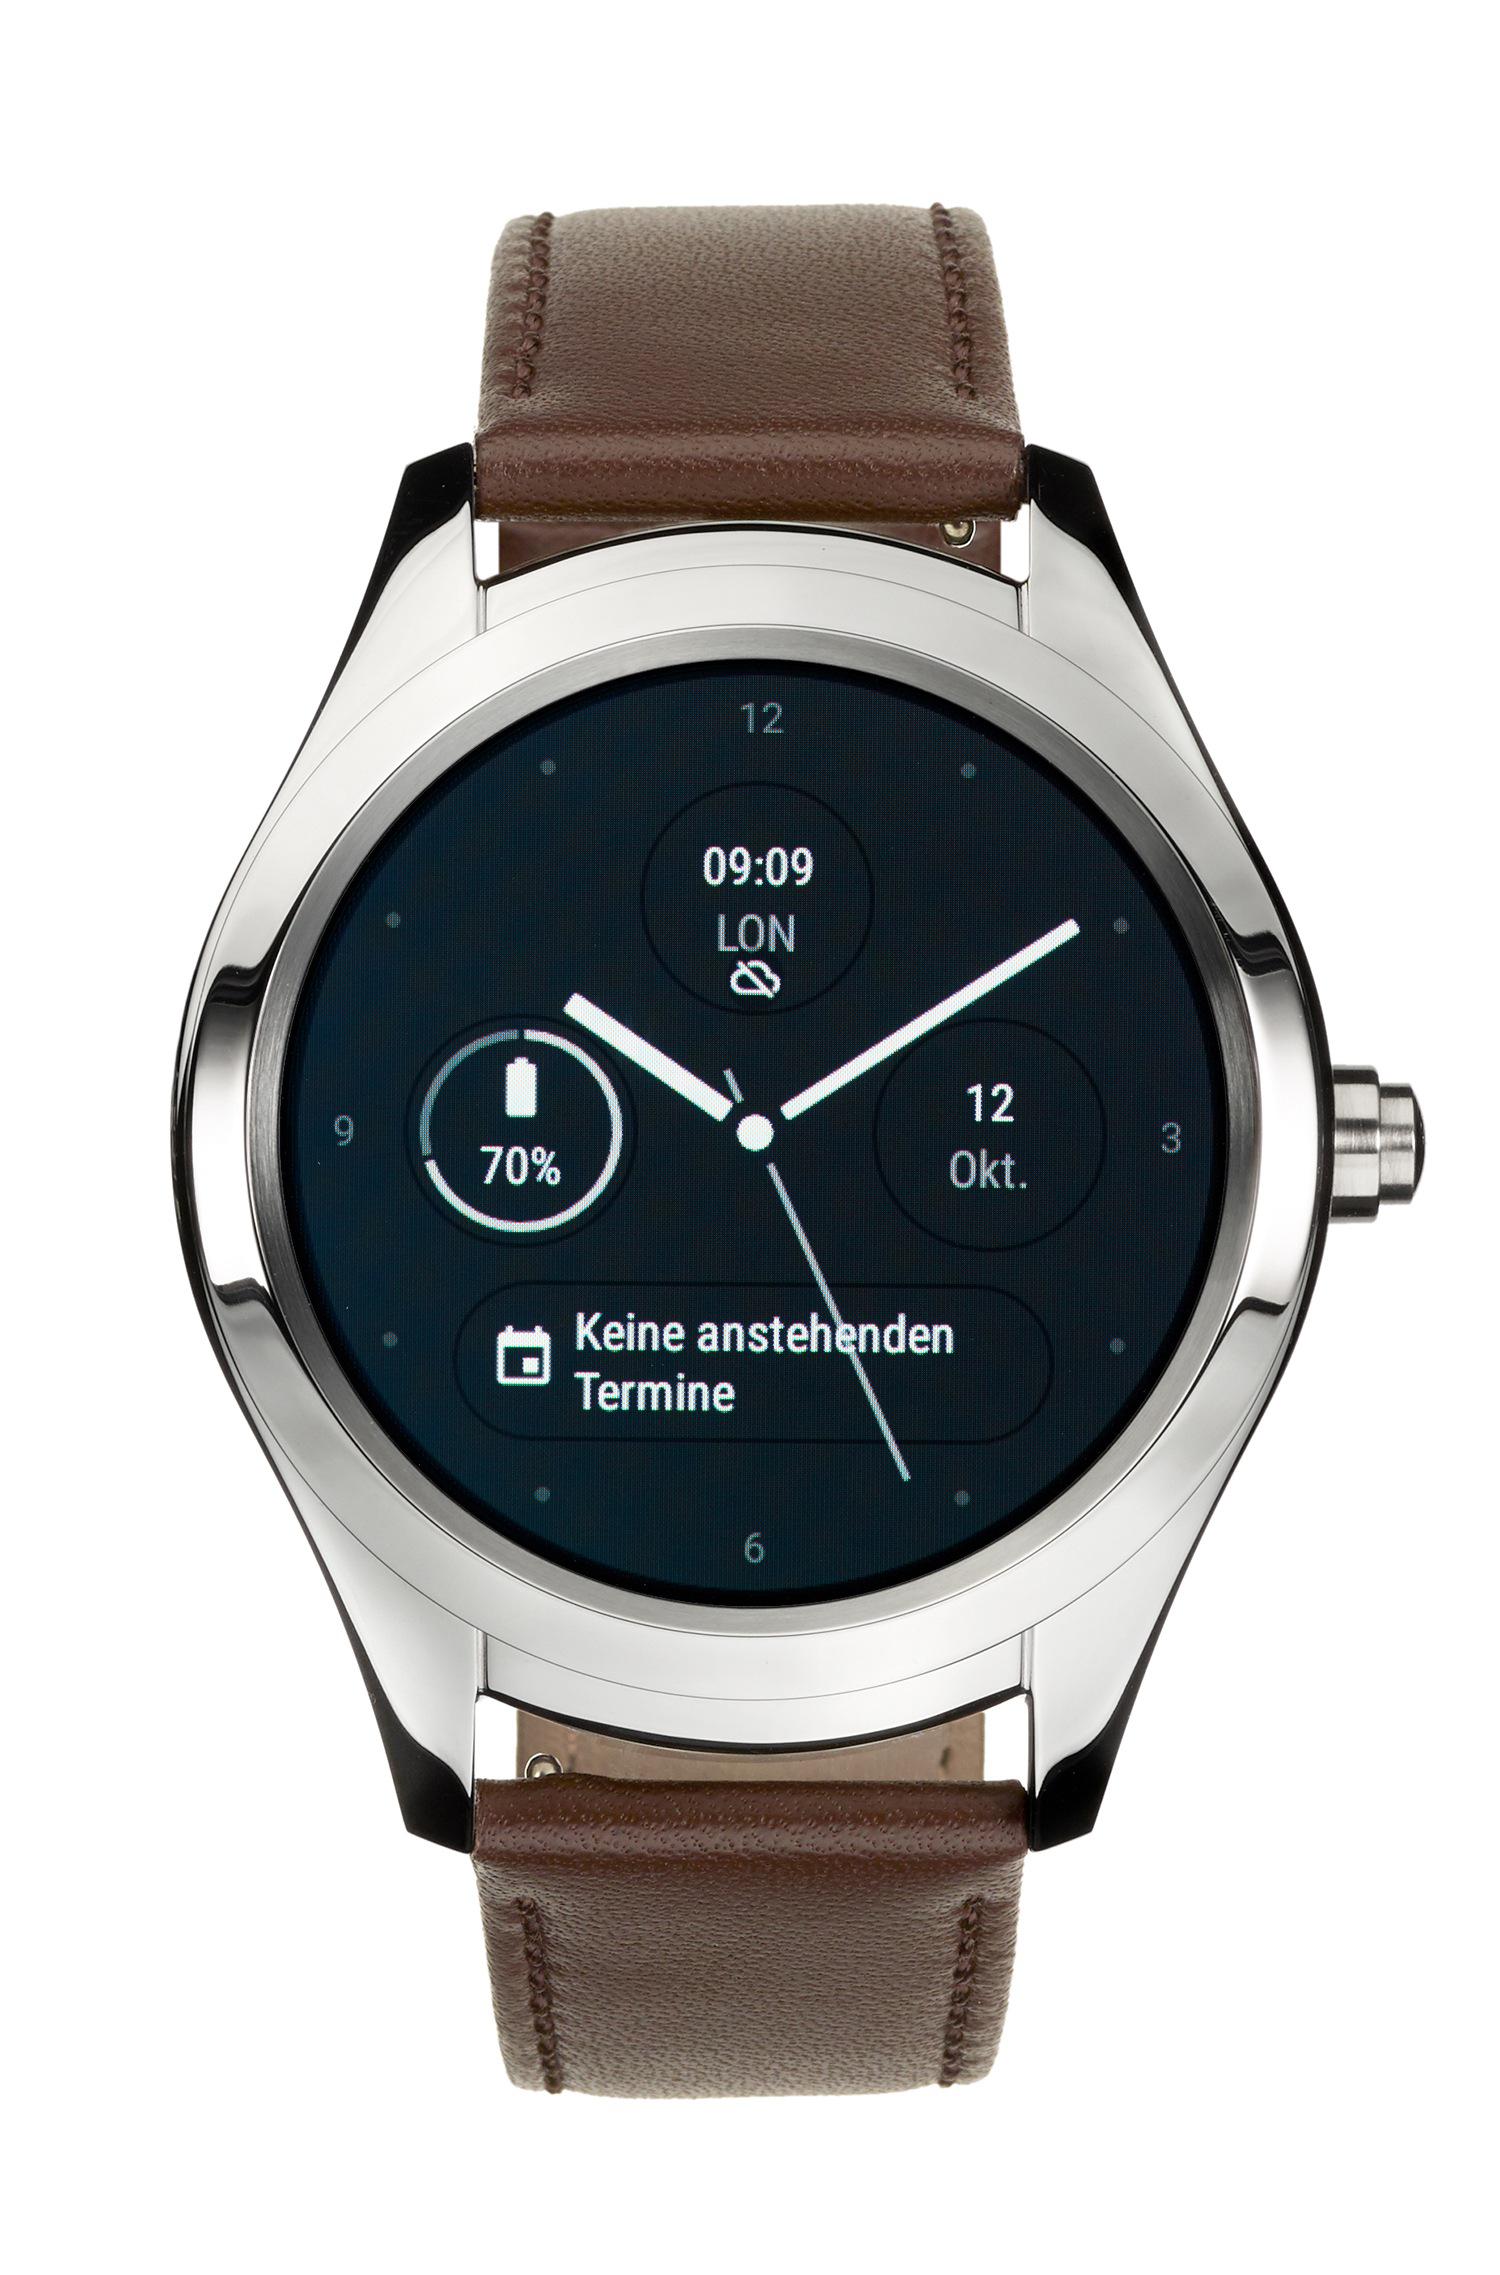 smartwatch boss touch,New daily offers,erekplastik.com